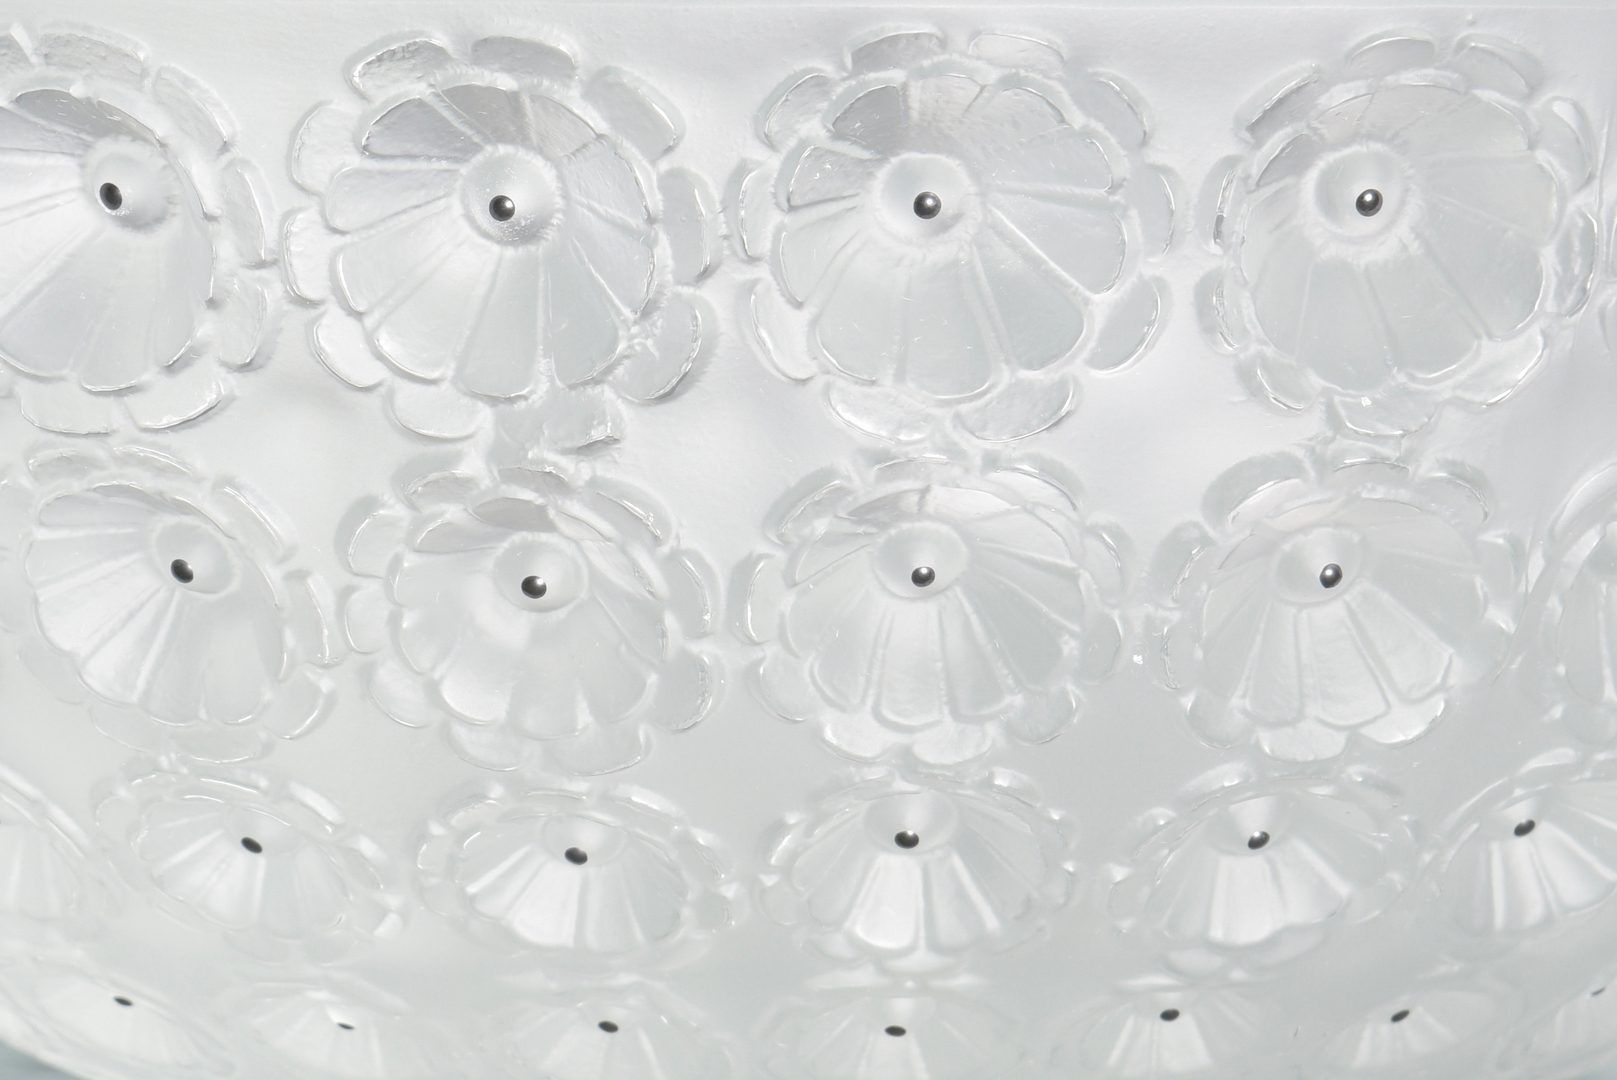 Lot 900: Rene Lalique Nemours Coupe Glass Bowl